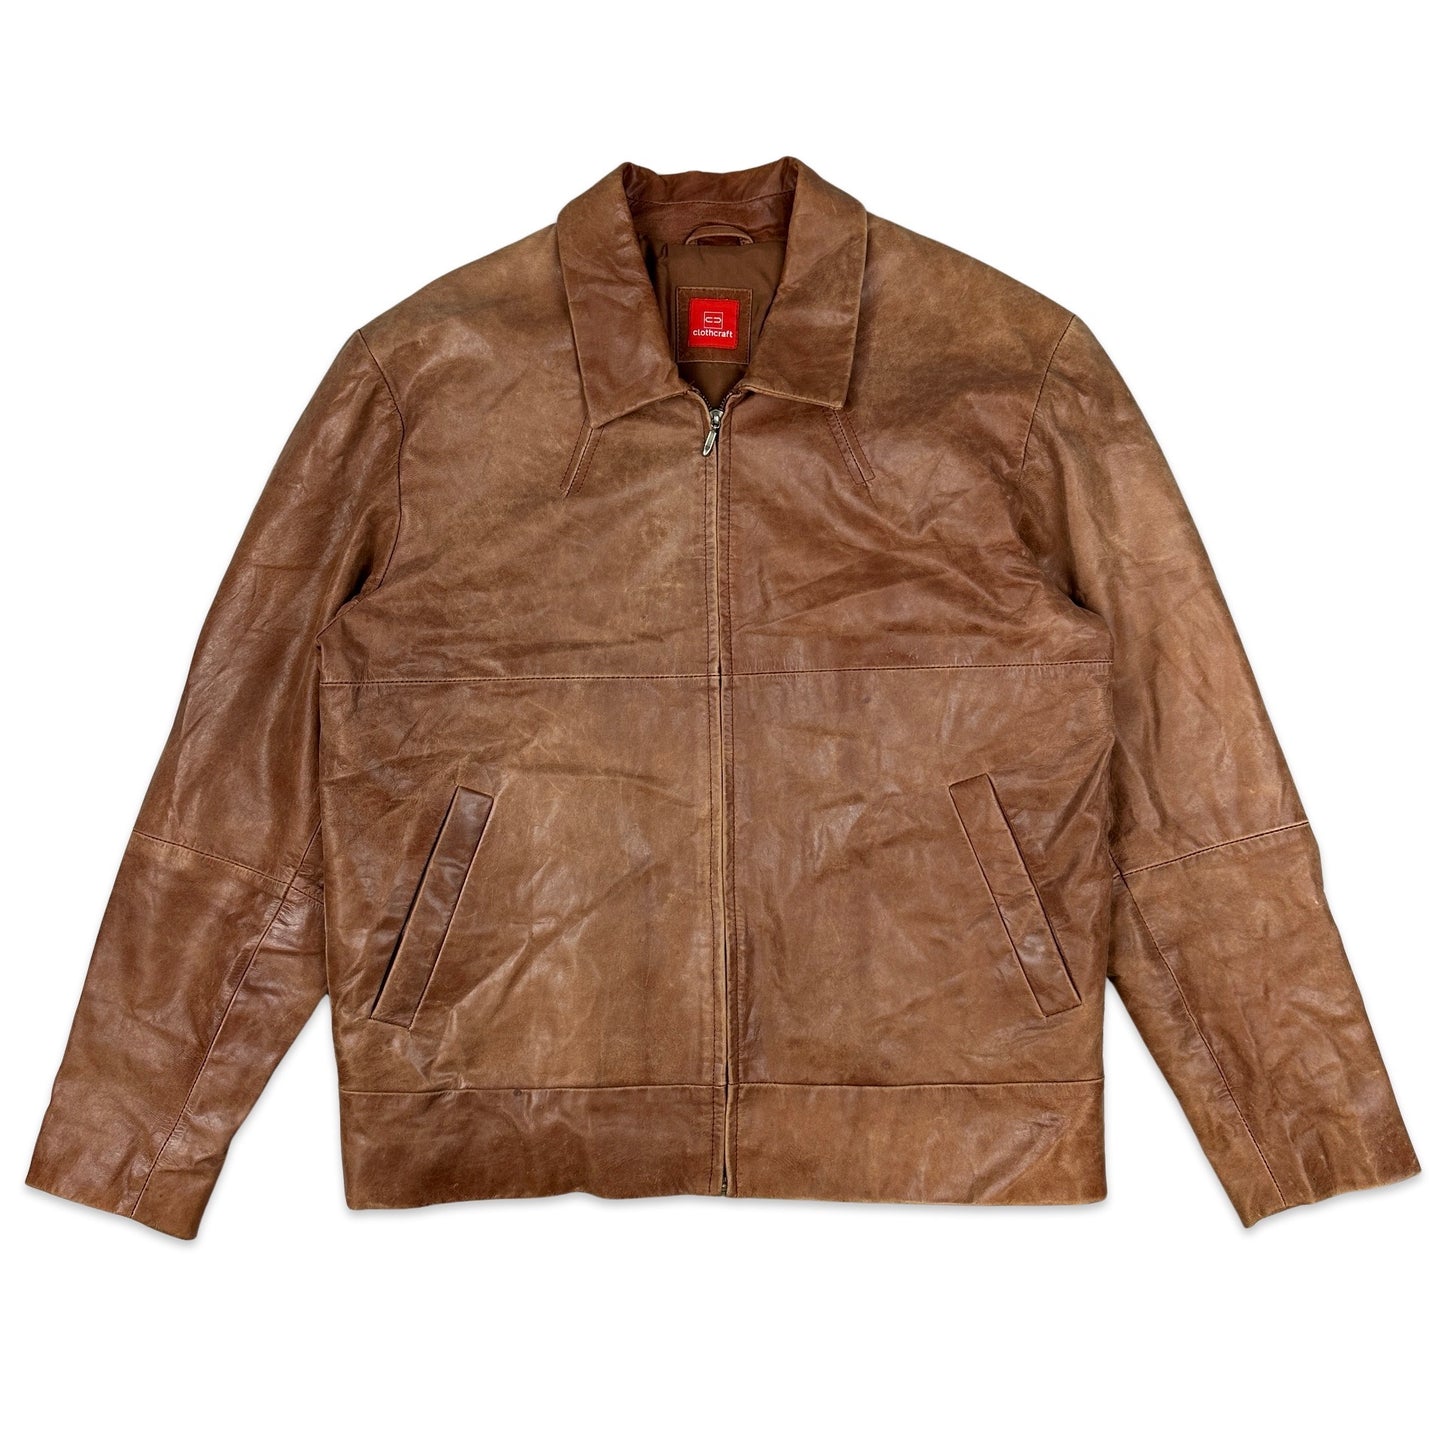 Vintage Preloved Tan Leather Jacket 14